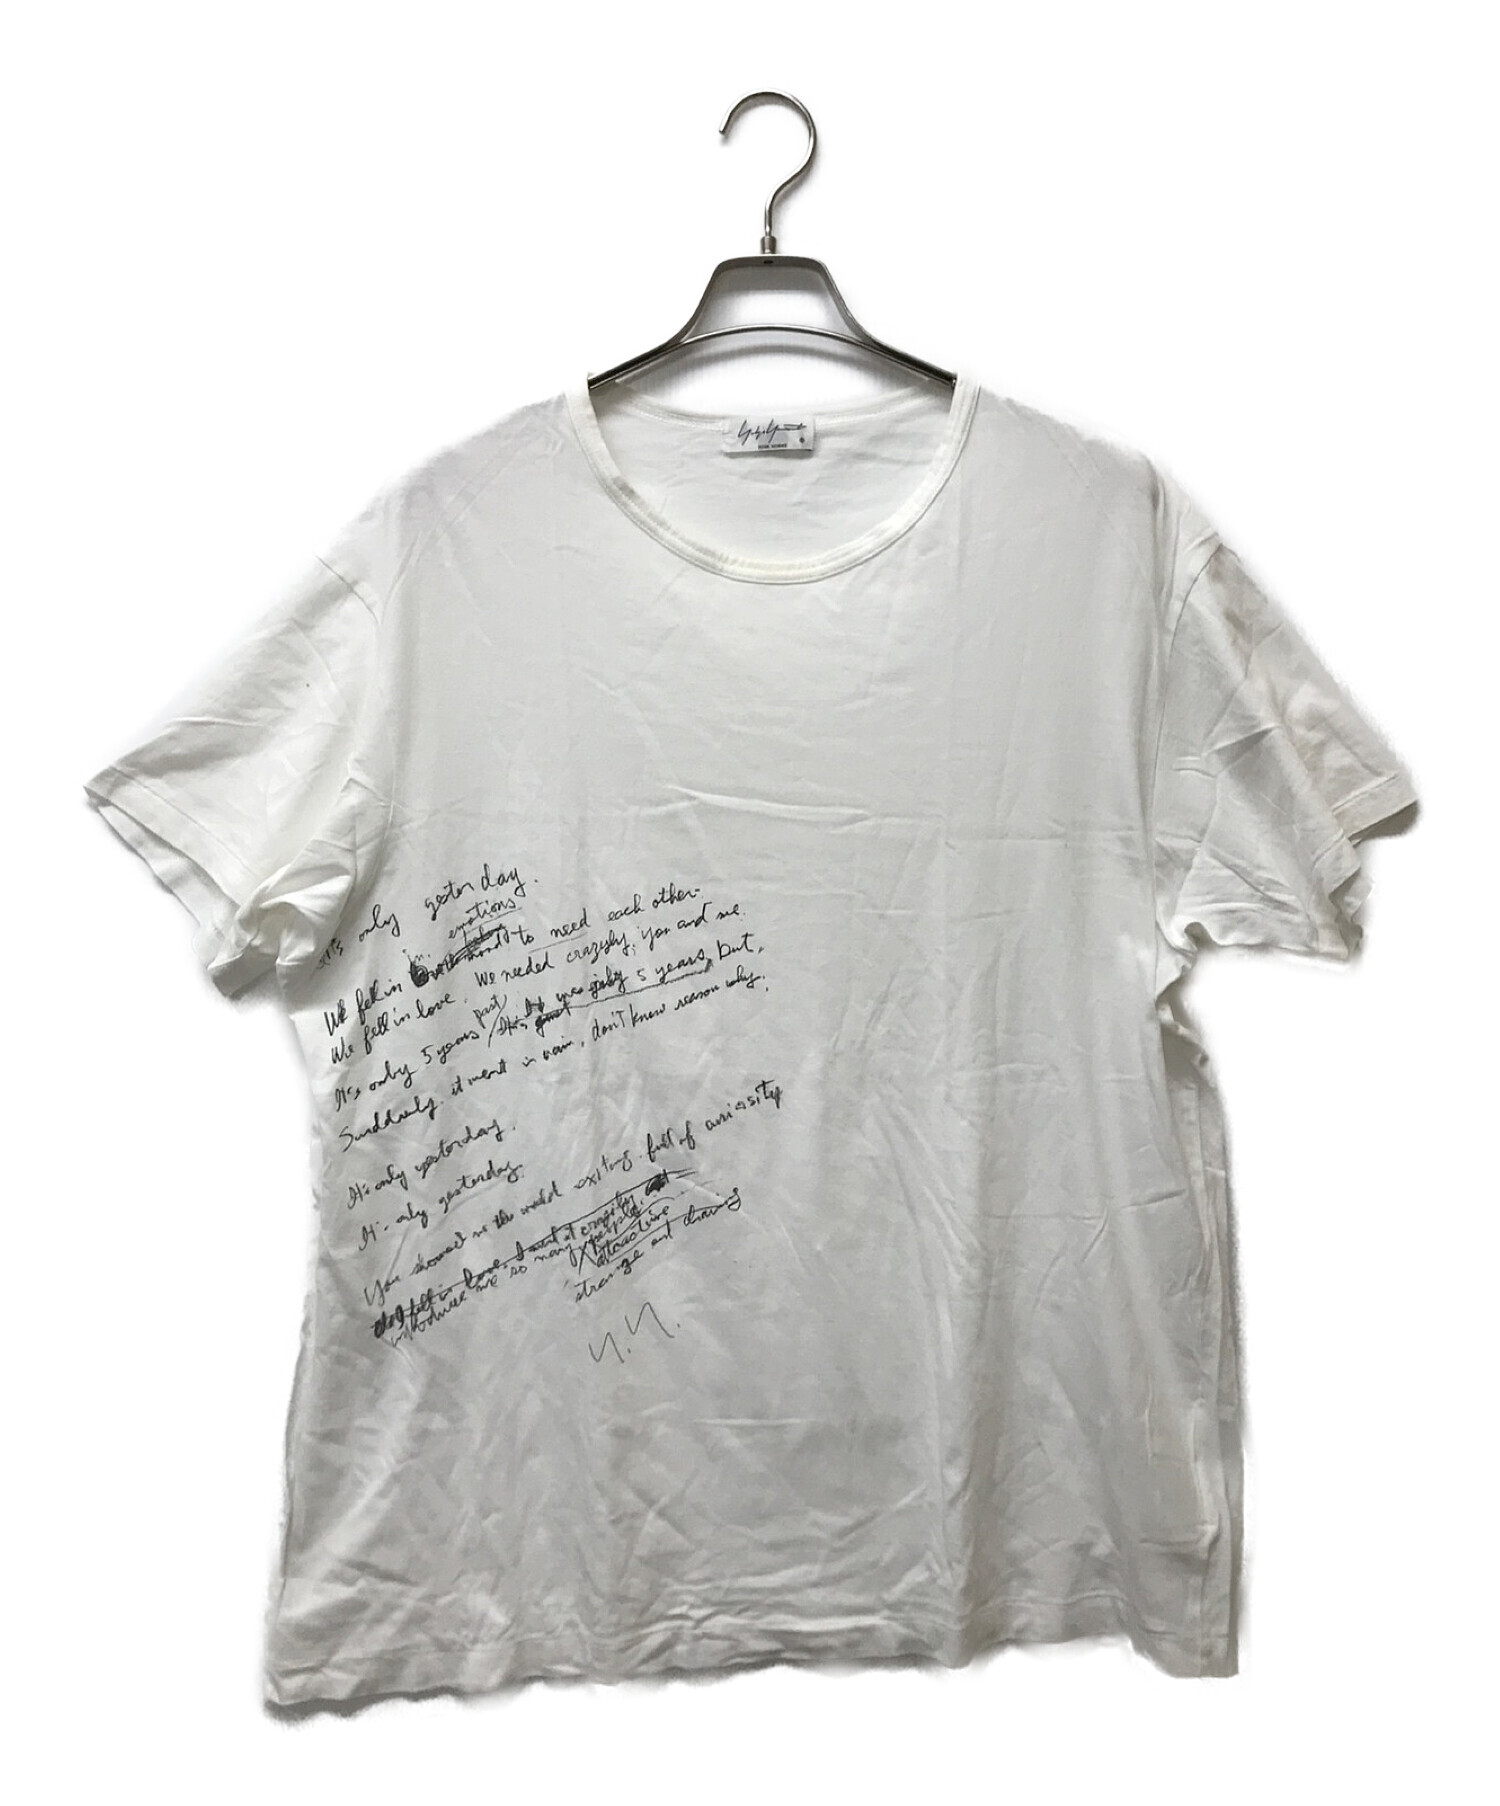 Yohji Yamamoto pour homme (ヨウジヤマモト プールオム) カルティマ天竺リリックプリントTシャツ ホワイト サイズ:3